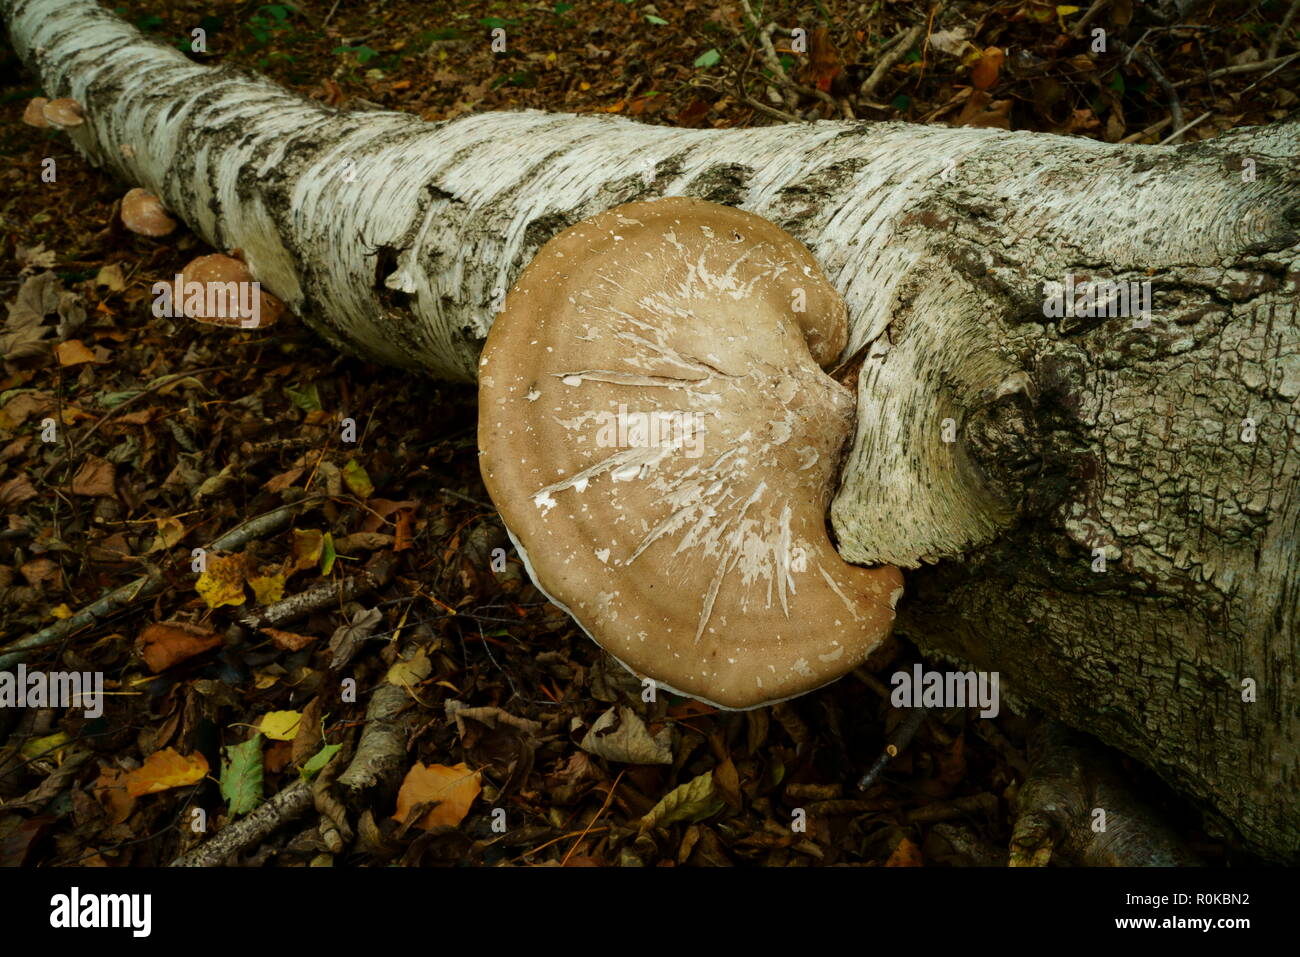 Bracket fungus growing on a fallen Silver Birch tree Stock Photo